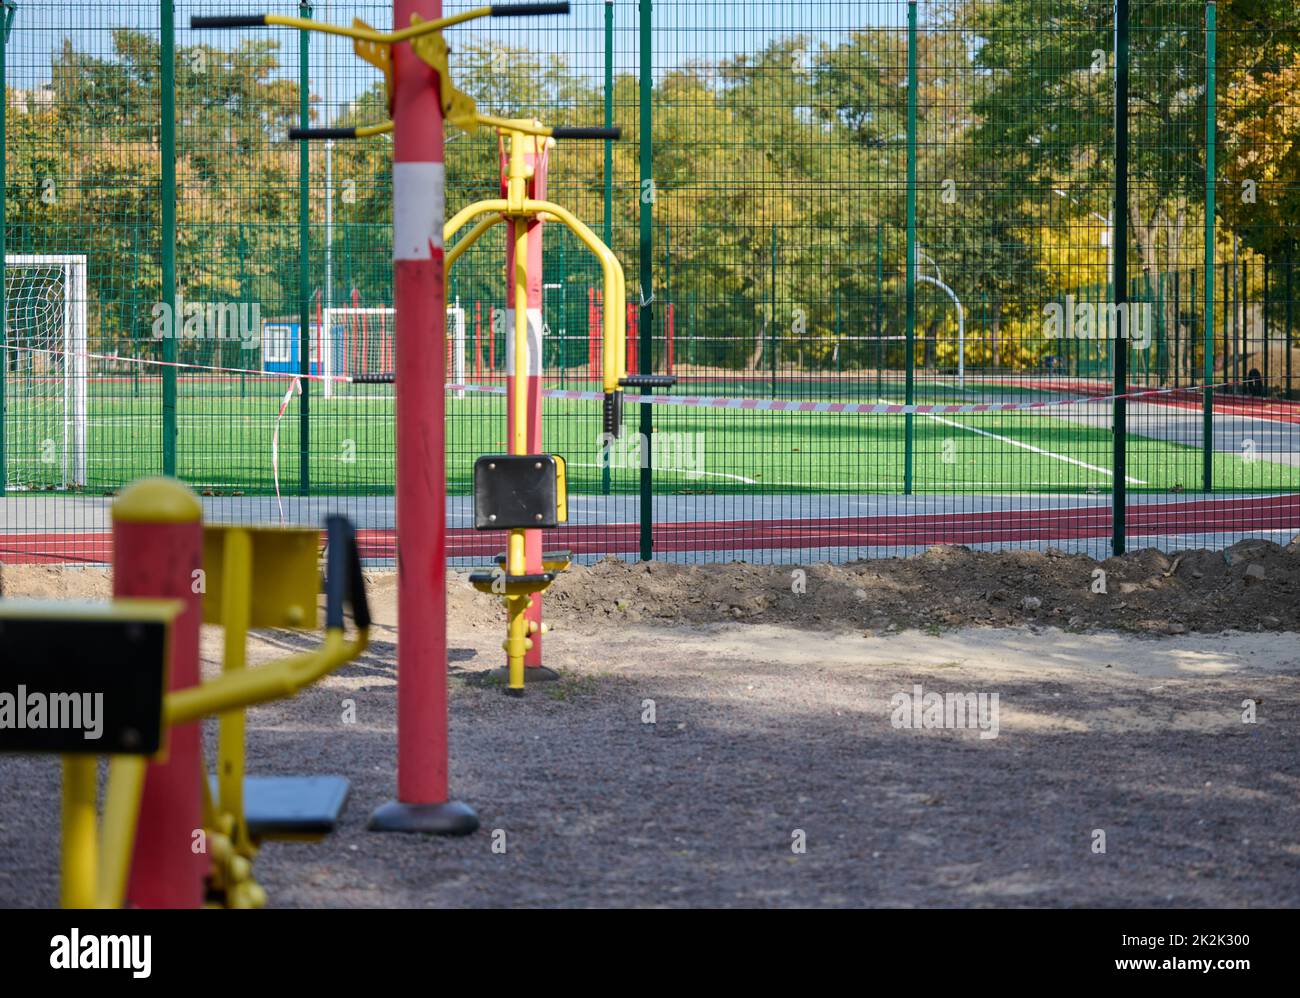 Sportgeräte in einem öffentlichen Park ohne Menschen, ein leerer Spielplatz während einer Pandemie und Epidemie. Sperrzeit Stockfoto